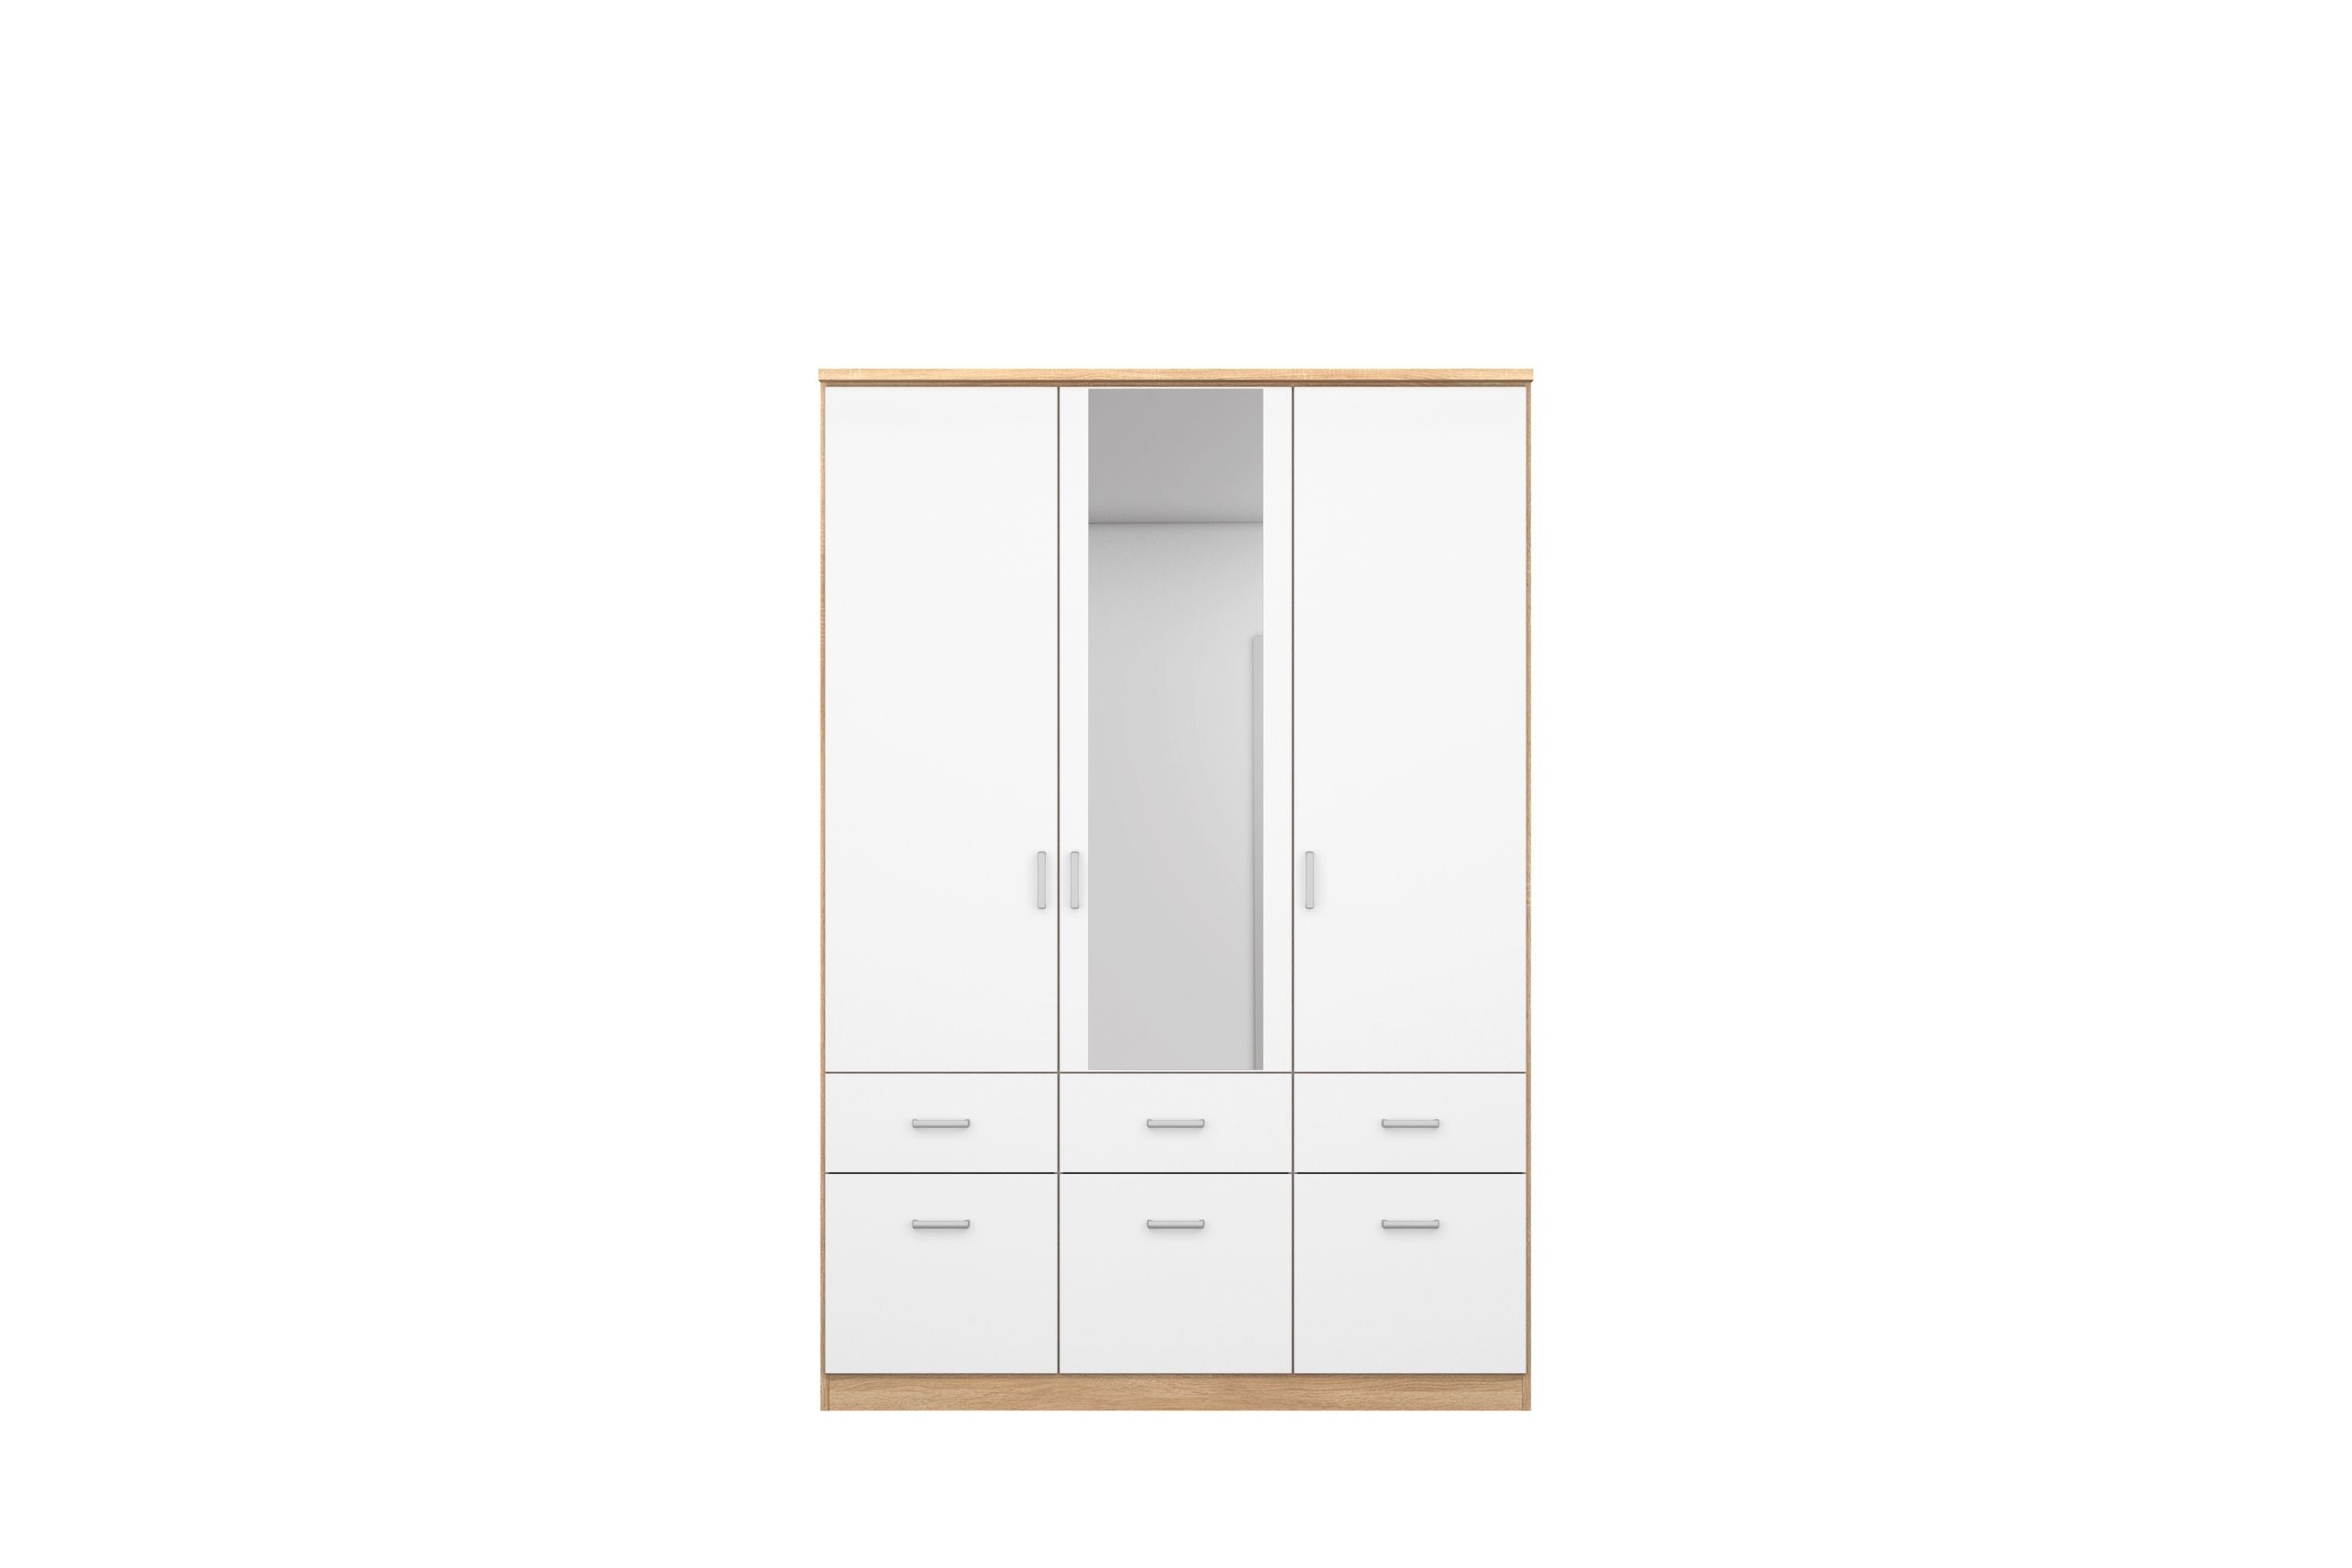 Kleiderschrank Dilan 3-trg + 6 Schubladen (3 kleine + 3 große) weiß braun B 136 cm H 199 cm T 58 cm